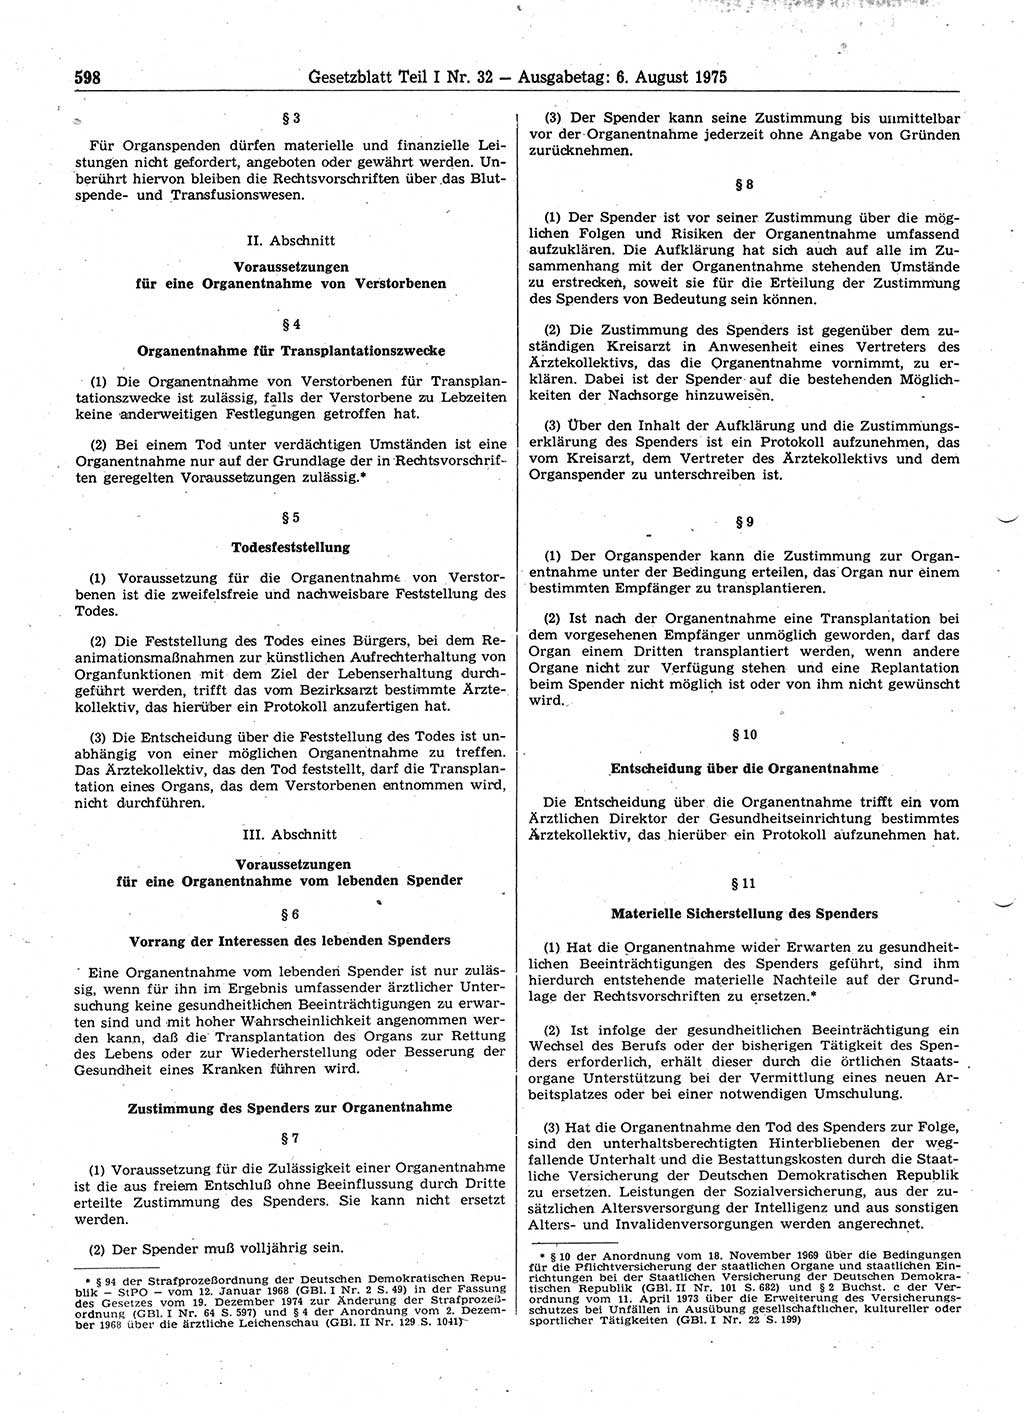 Gesetzblatt (GBl.) der Deutschen Demokratischen Republik (DDR) Teil Ⅰ 1975, Seite 598 (GBl. DDR Ⅰ 1975, S. 598)